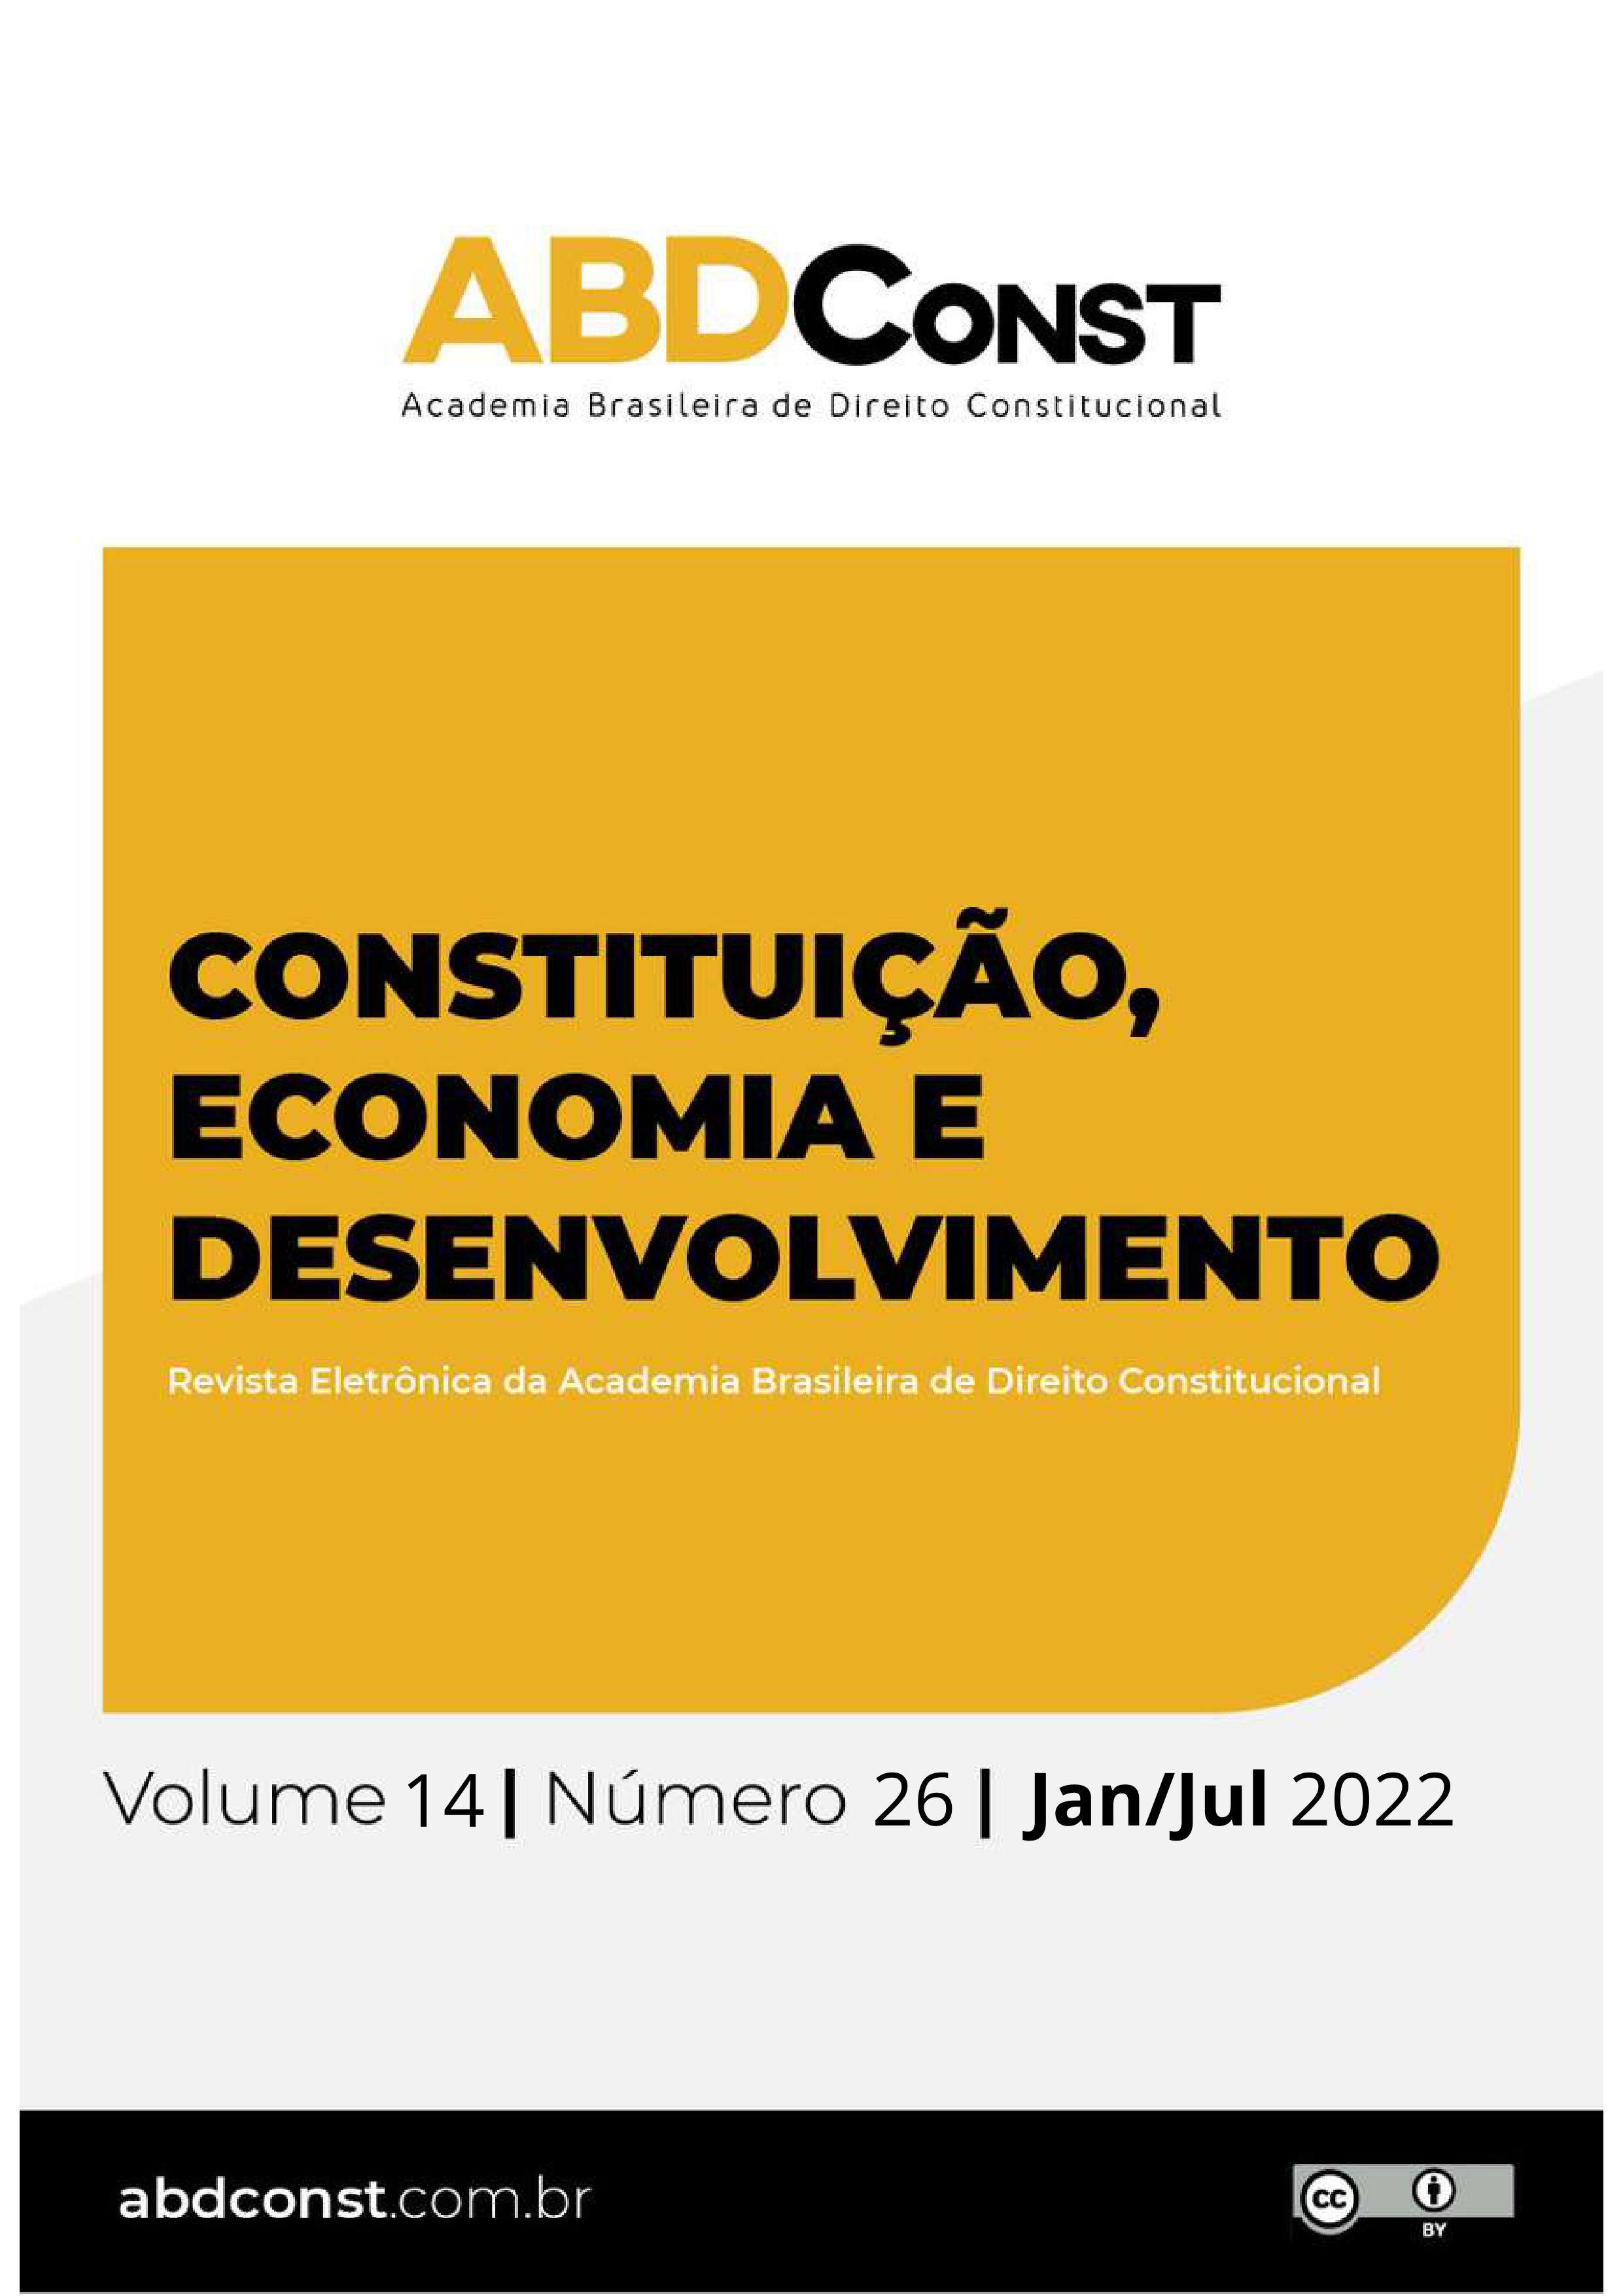 Vígil - Dicio, Dicionário Online de Português